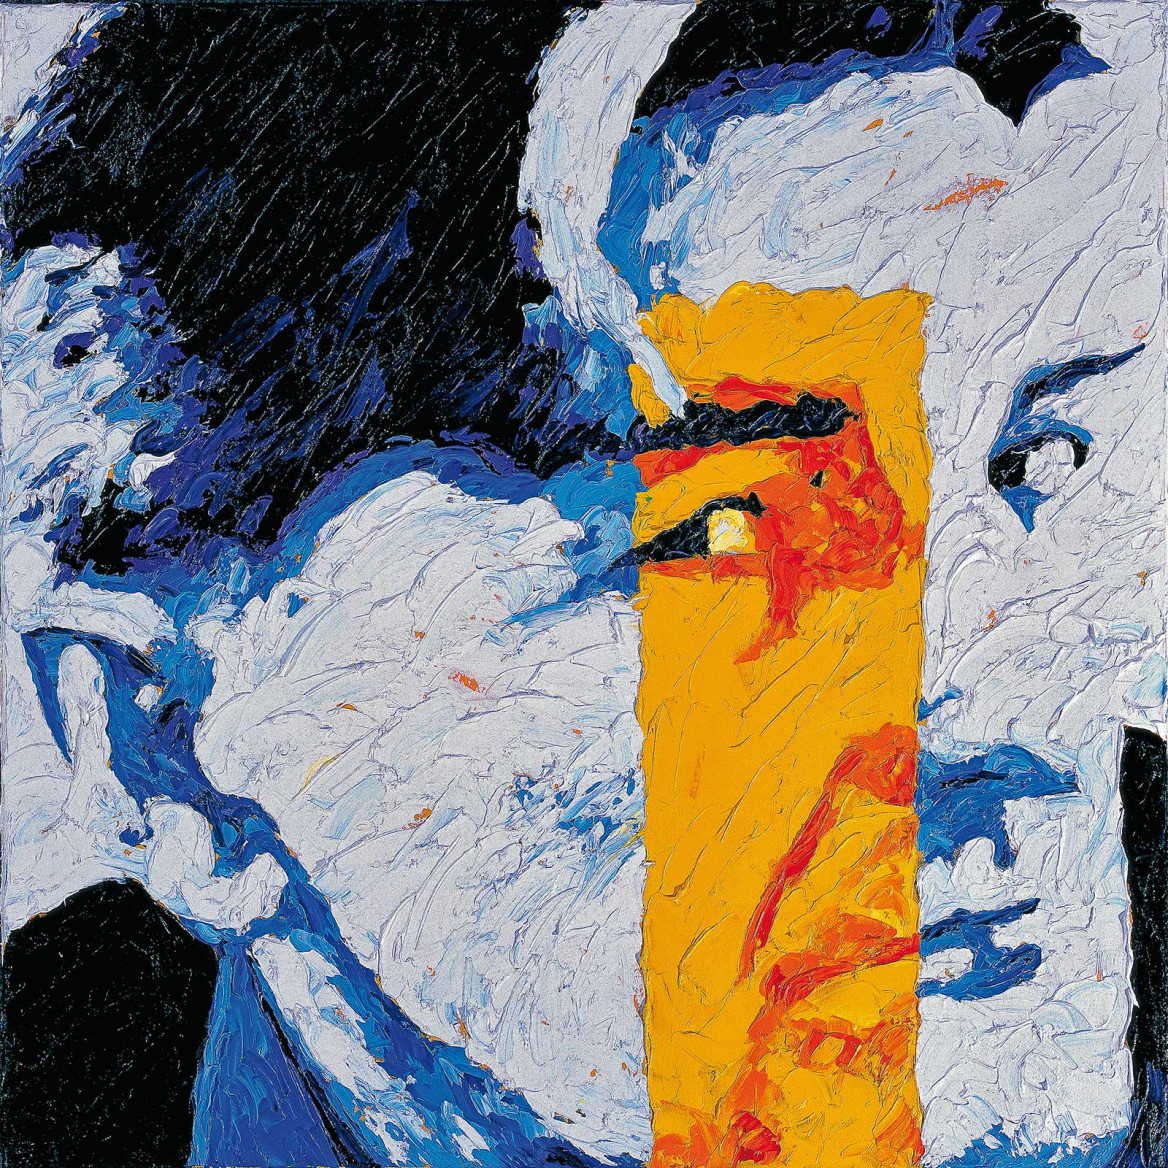 Portrait of Hans in blue with a yellow stripe painted with palette knife in oil on canvas; Spachtelmesser von Hans in Blautönen mit gelbem Streifen gemalt in Öl mit Spachtelmesser auf Leinwand